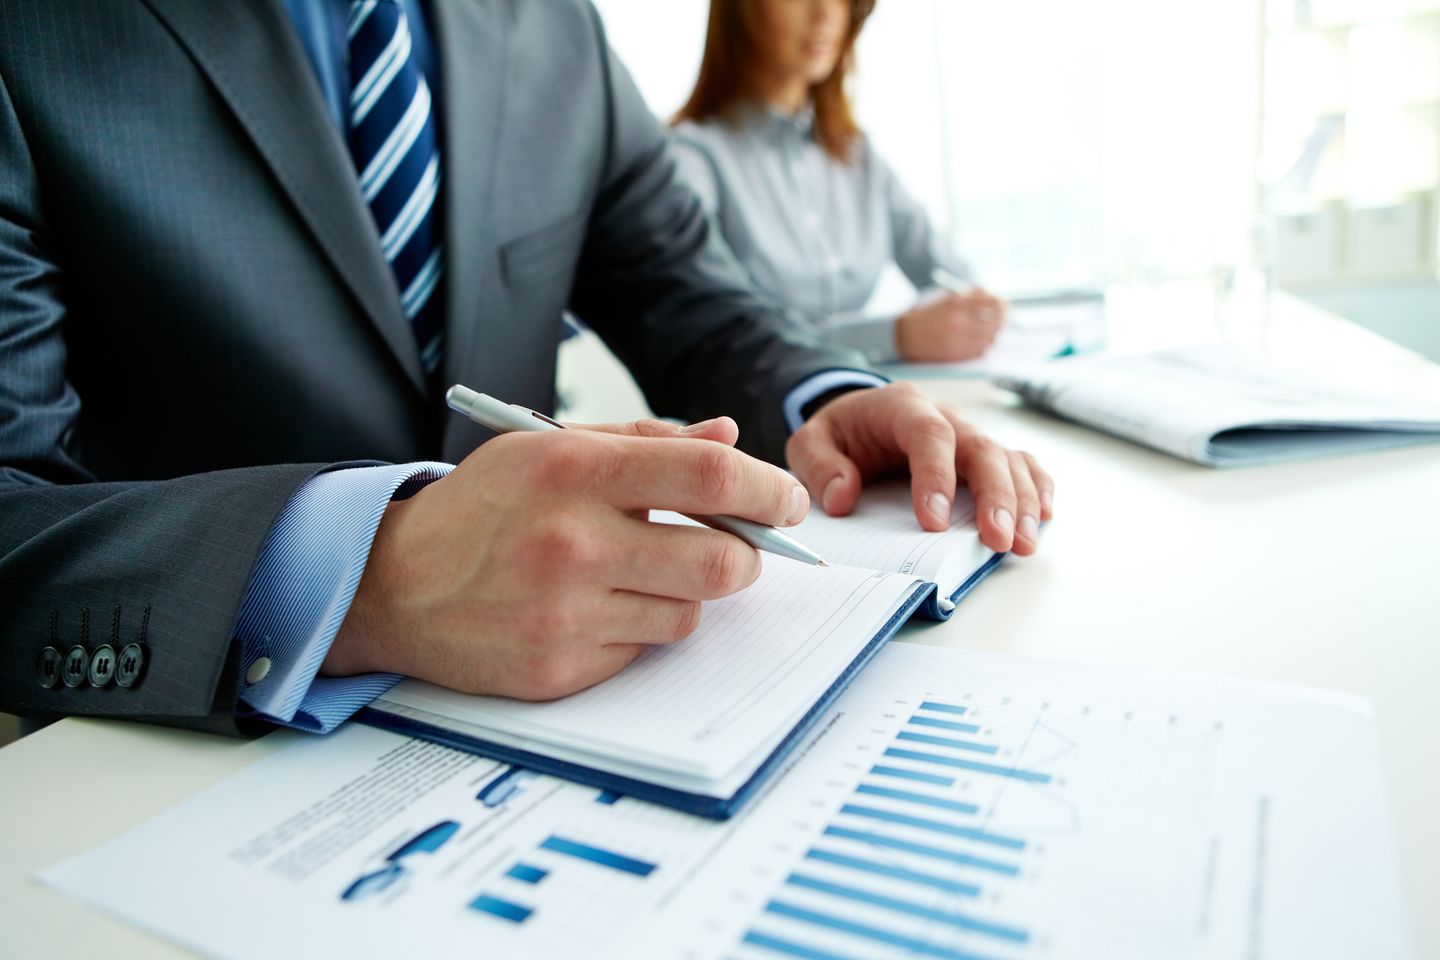 Executive summary adalah ringkasan rencana bisnis yang ditulis untuk menarik minat investor.